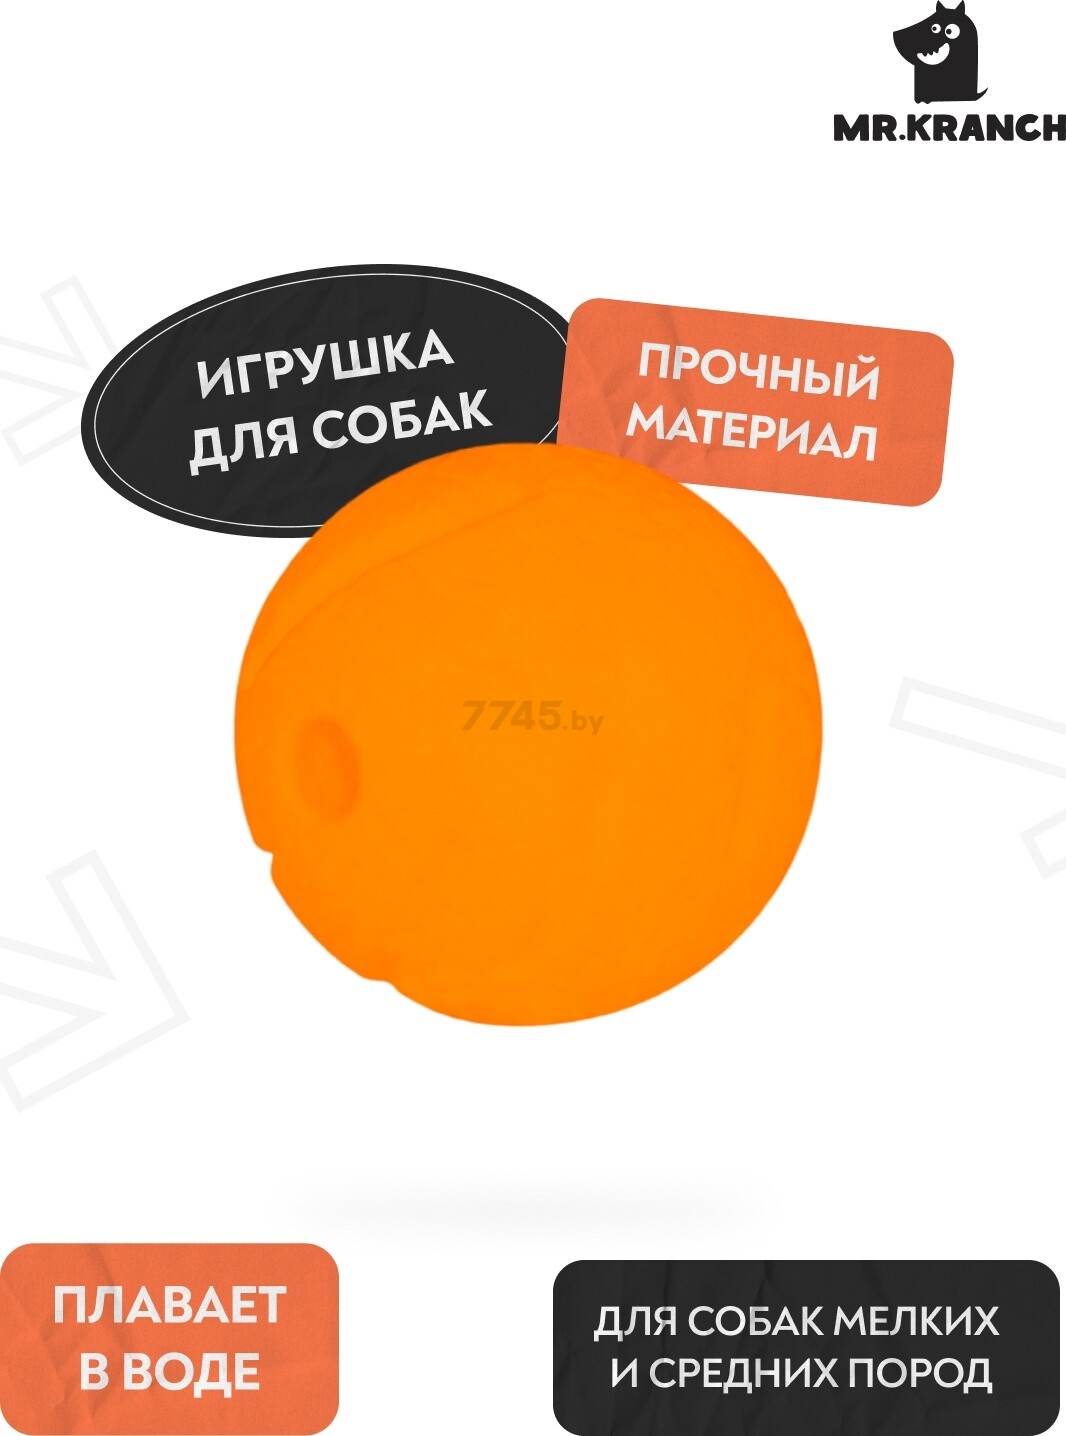 Игрушка для собак MR.KRANCH Мяч 6 см оранжевый (MKR000158) - Фото 3